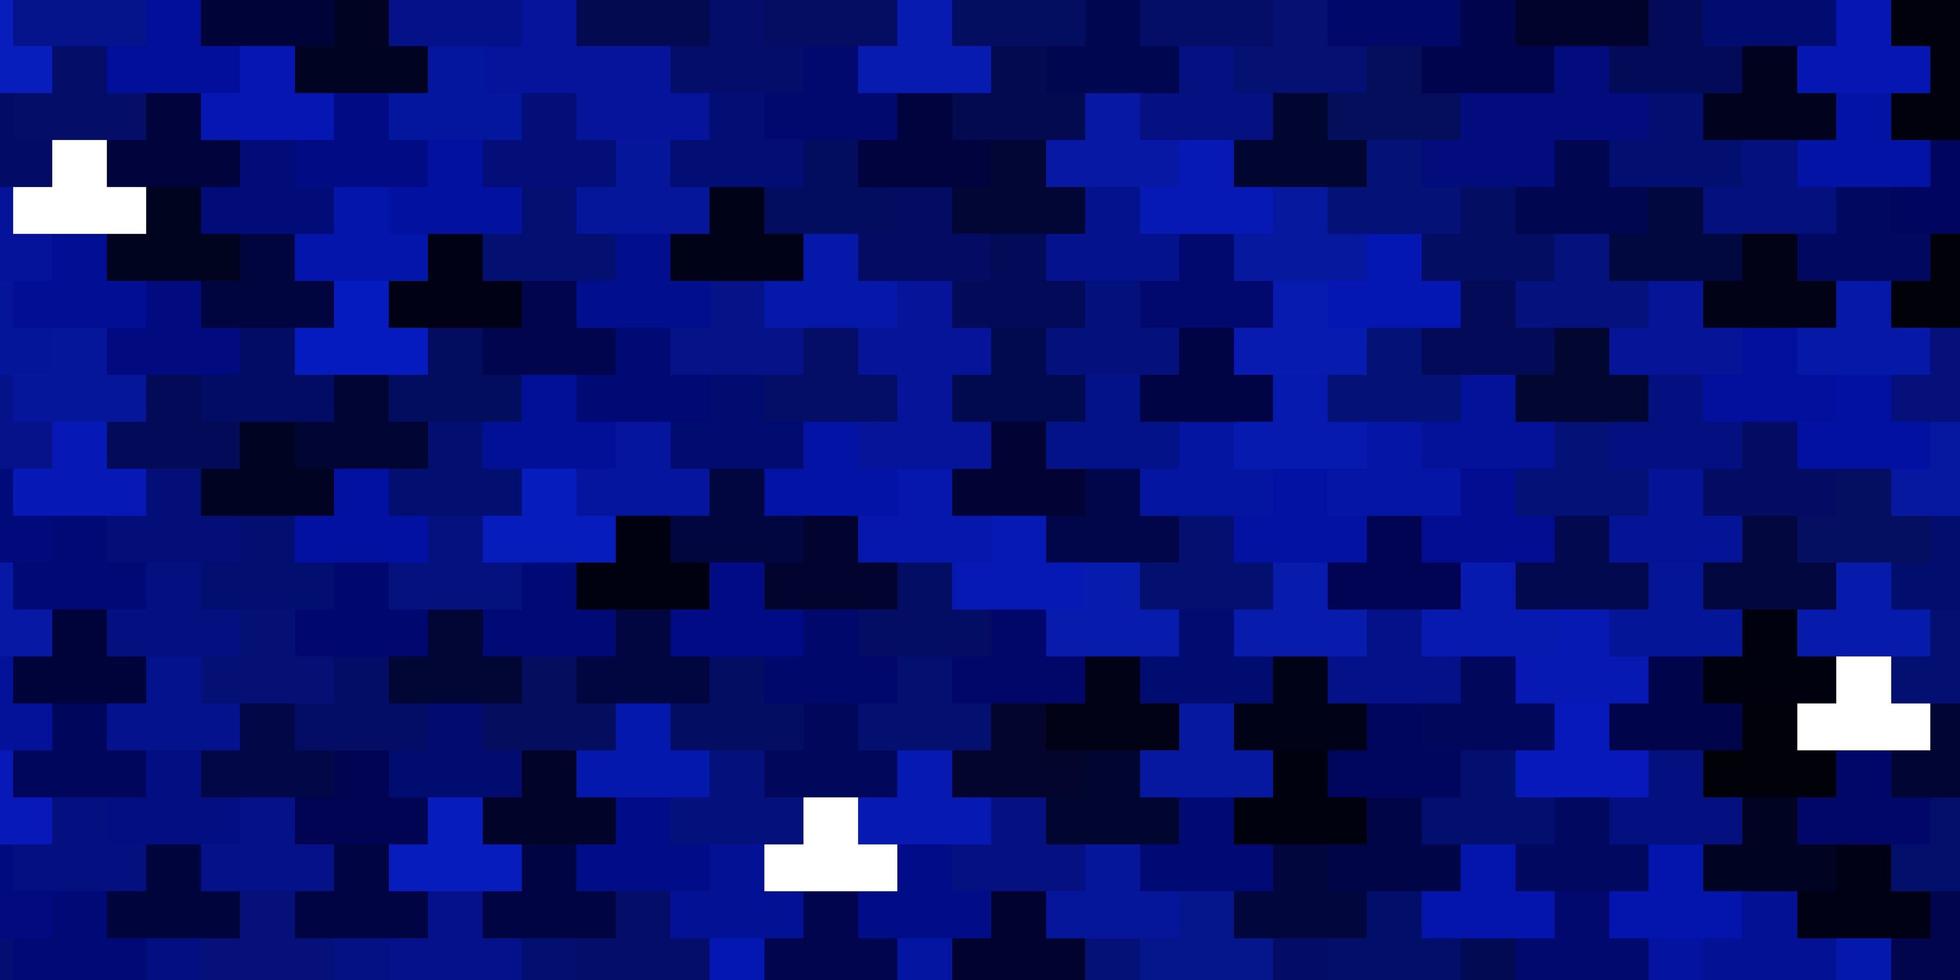 mörkblå vektormall i rektanglar färgglad illustration med lutningsrektanglar och rutor mönster för webbplatser målsidor vektor